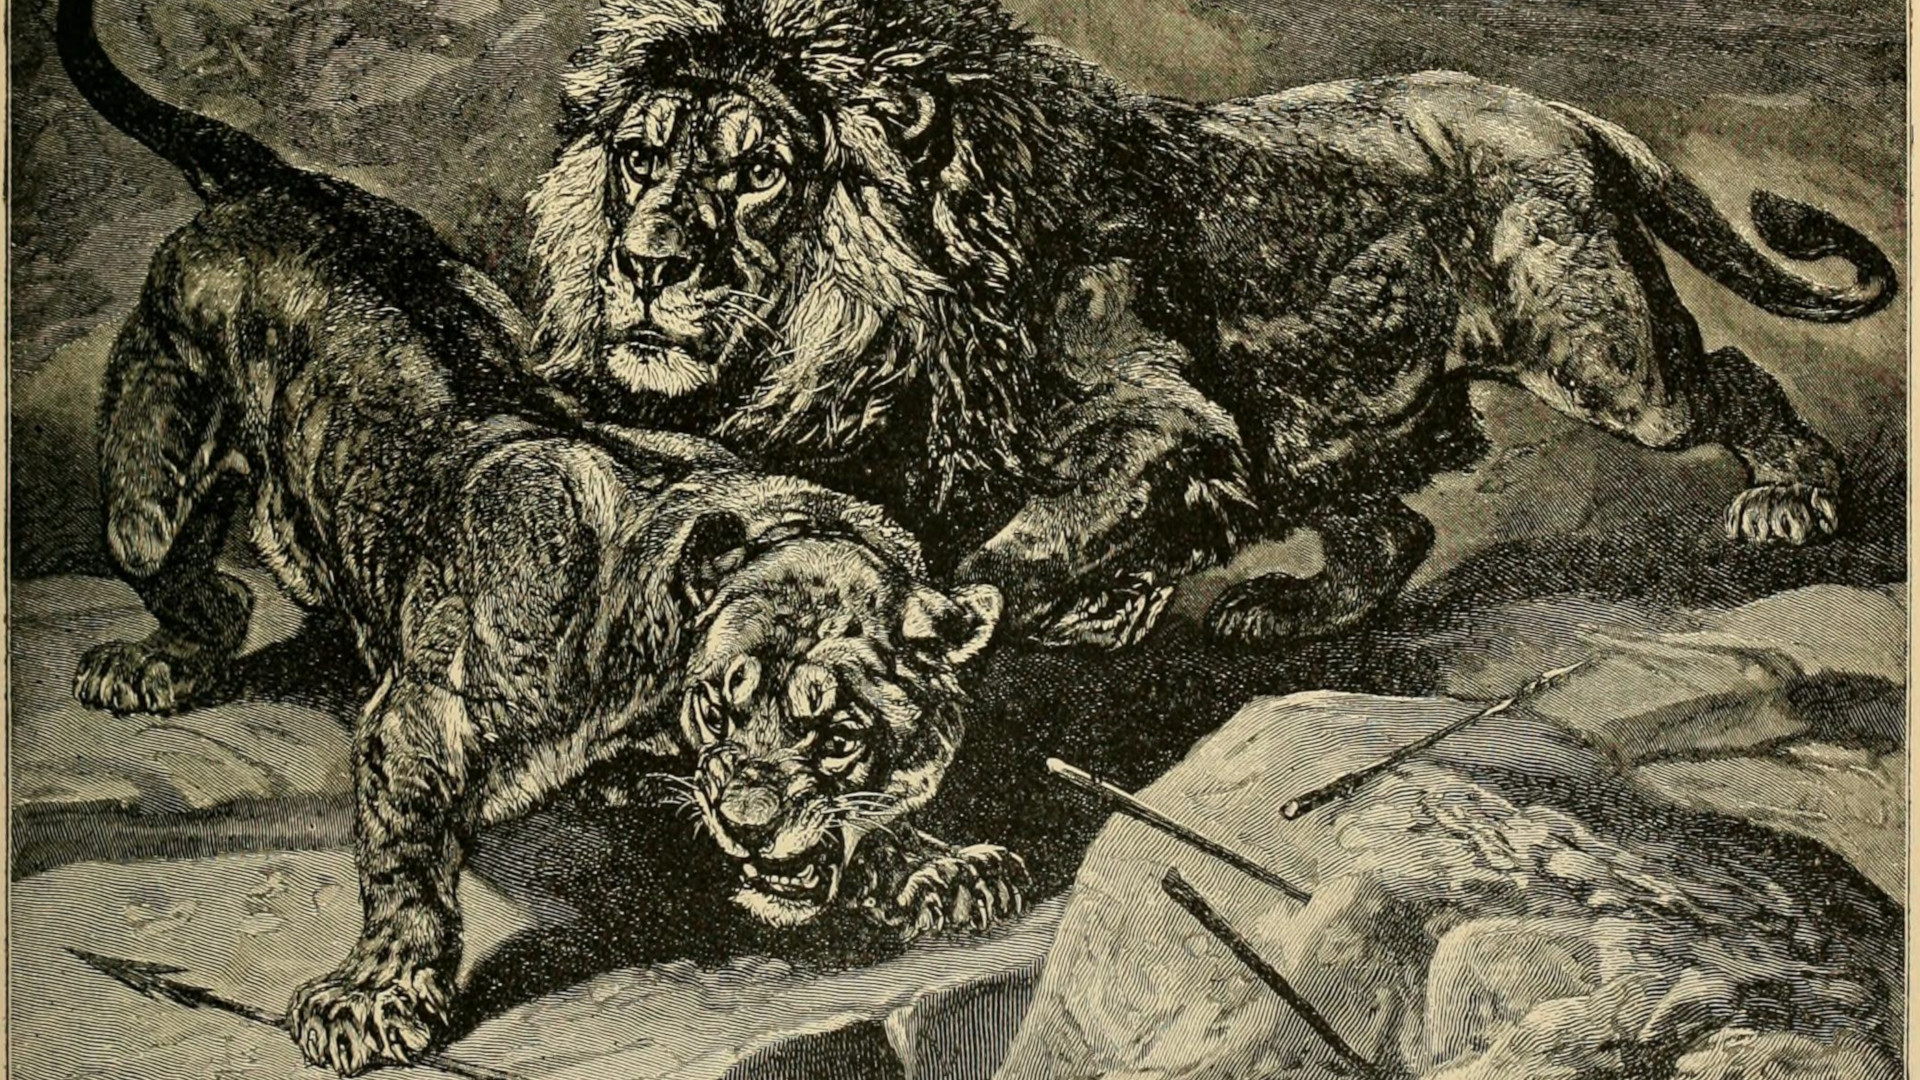 Barbary Lion Sultan was kept in London Zoo in 1896